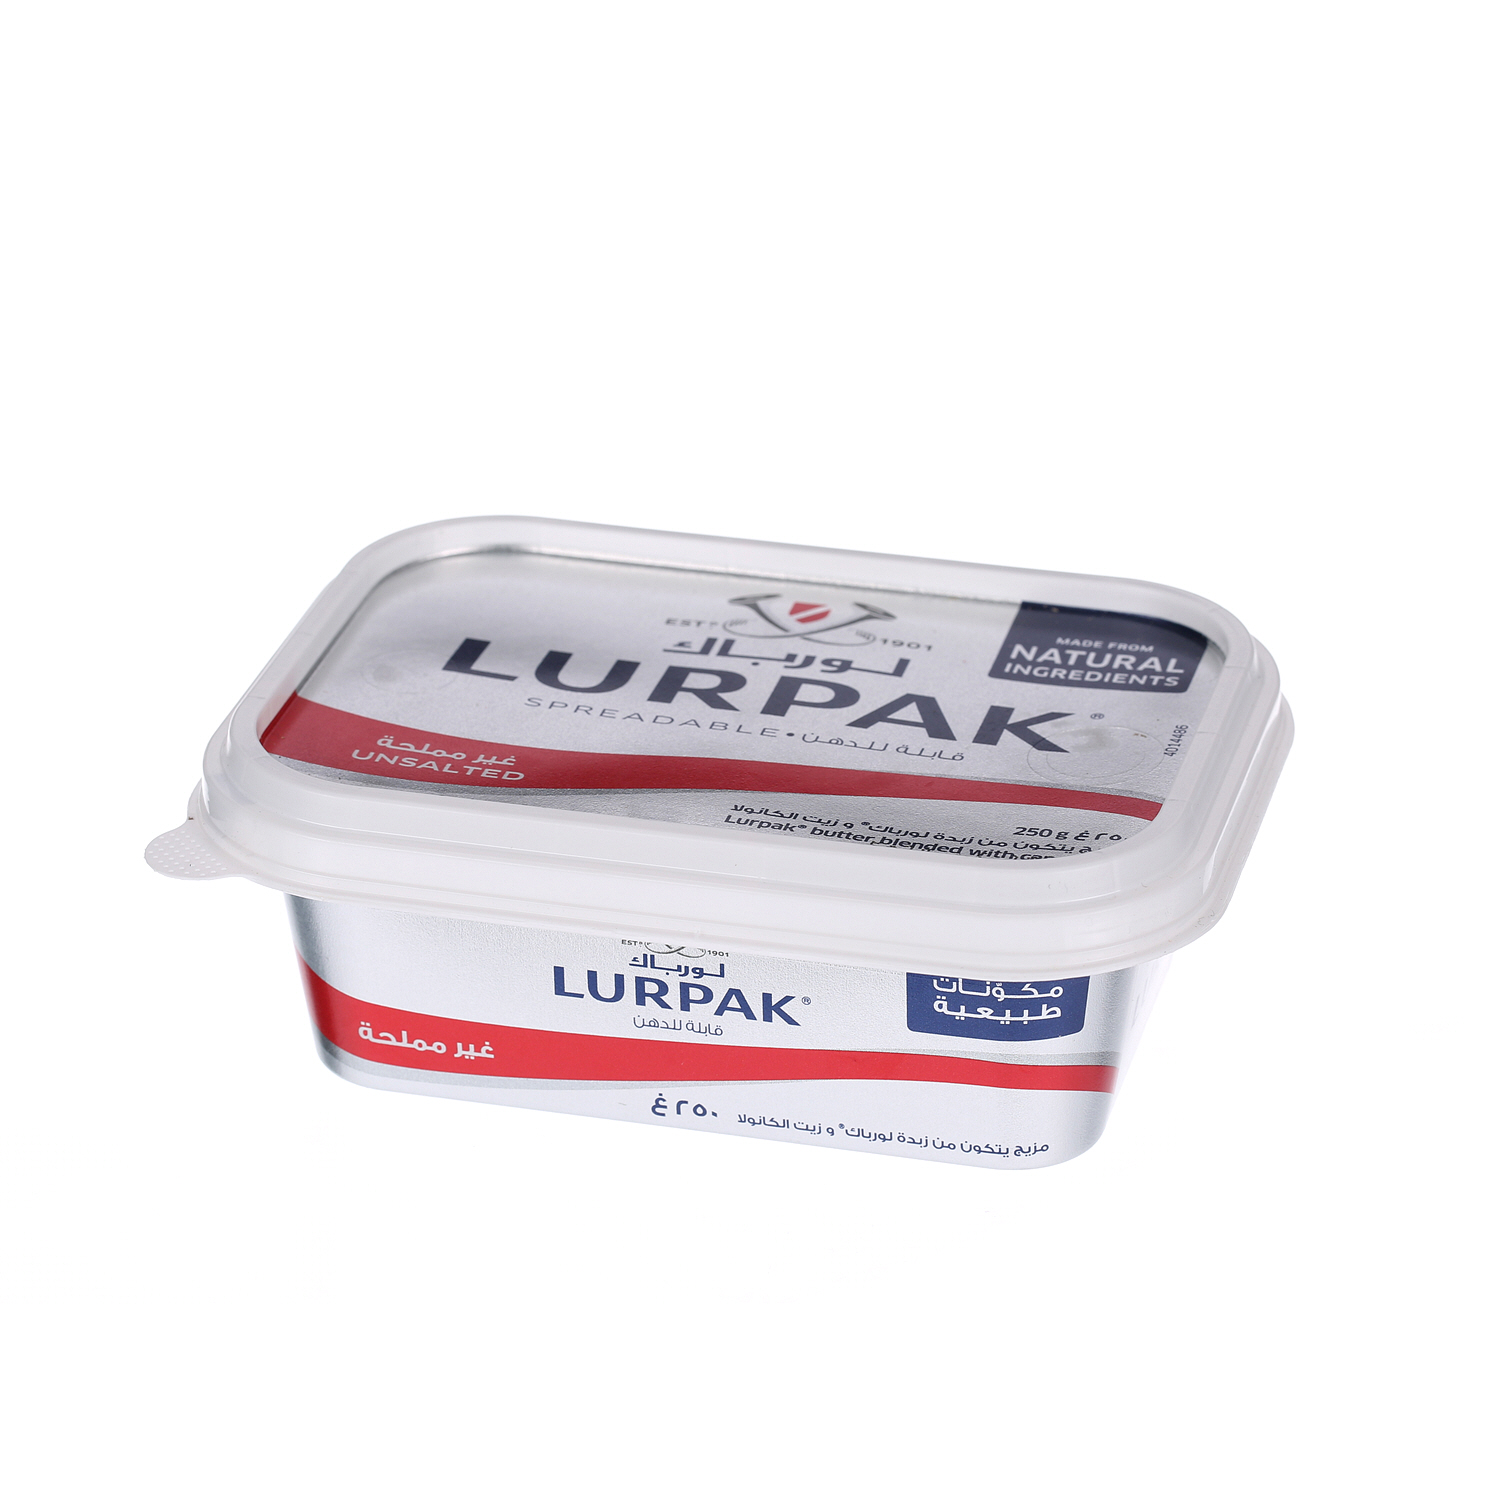 Lurpak Butter Spreadable Unsalted 250gm